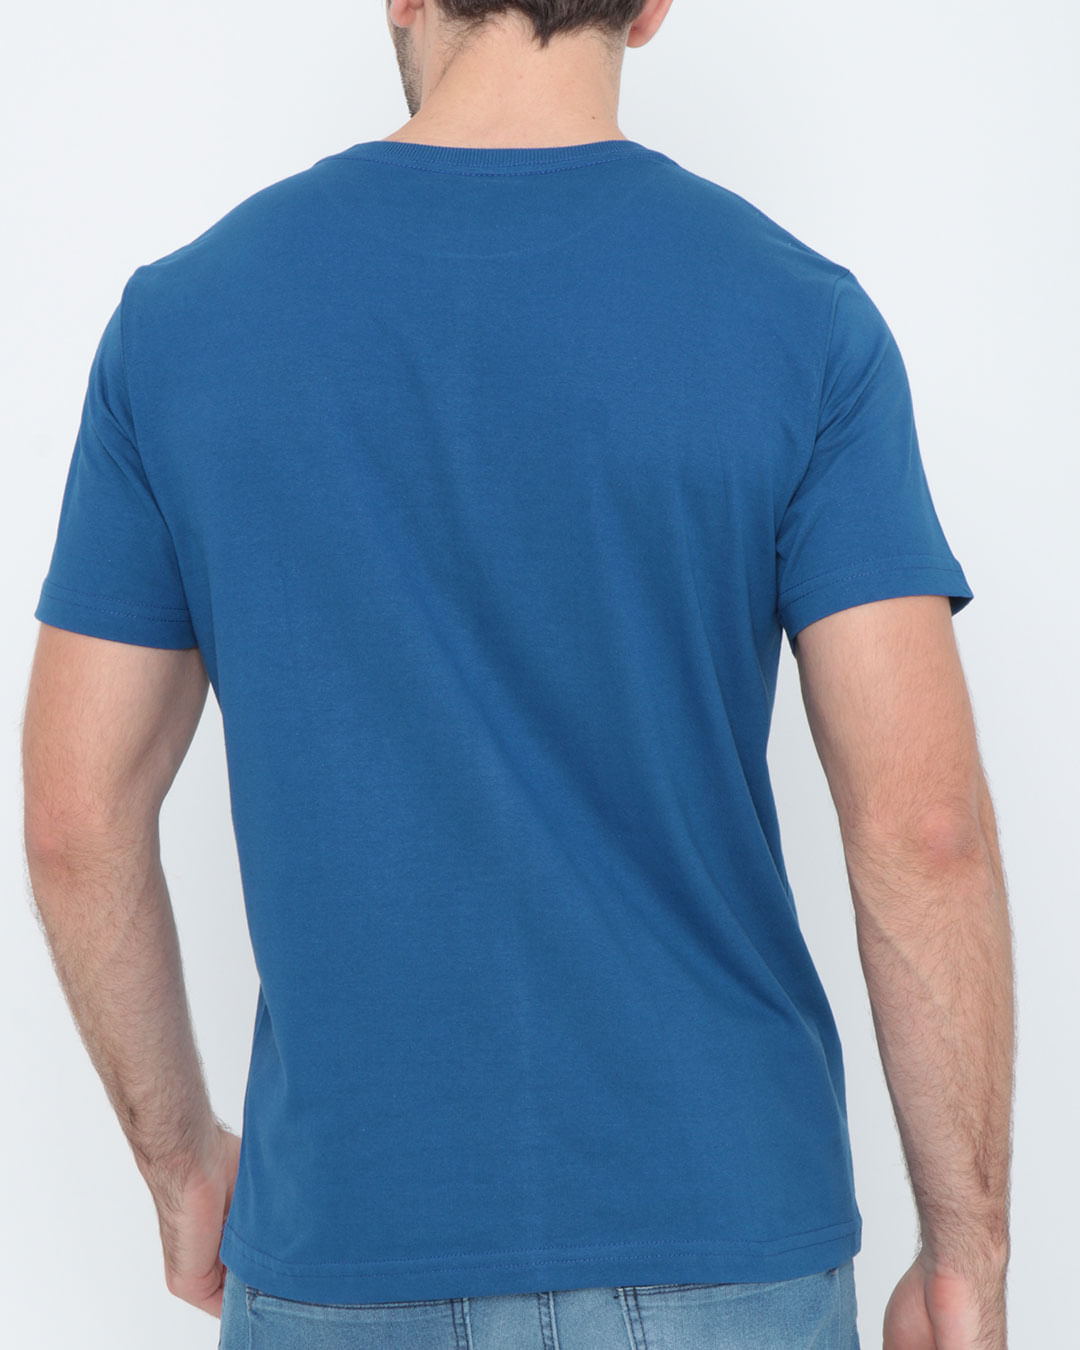 Camiseta-Estampada-Fatal-Azul-Escuro